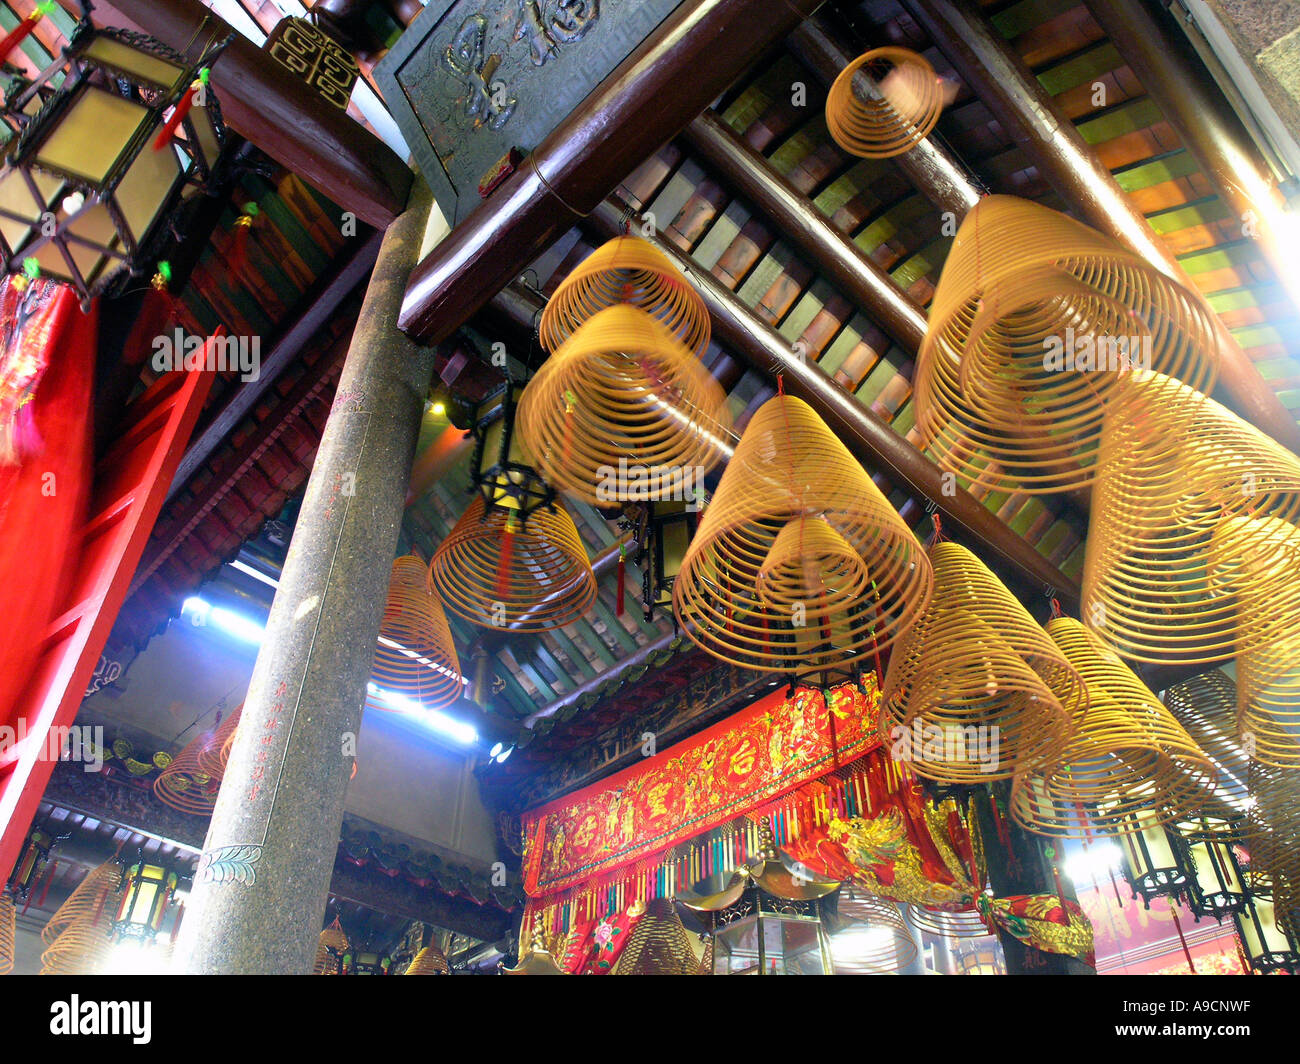 Tinhau temple at Tinhau station north point Hong Kong china Stock Photo